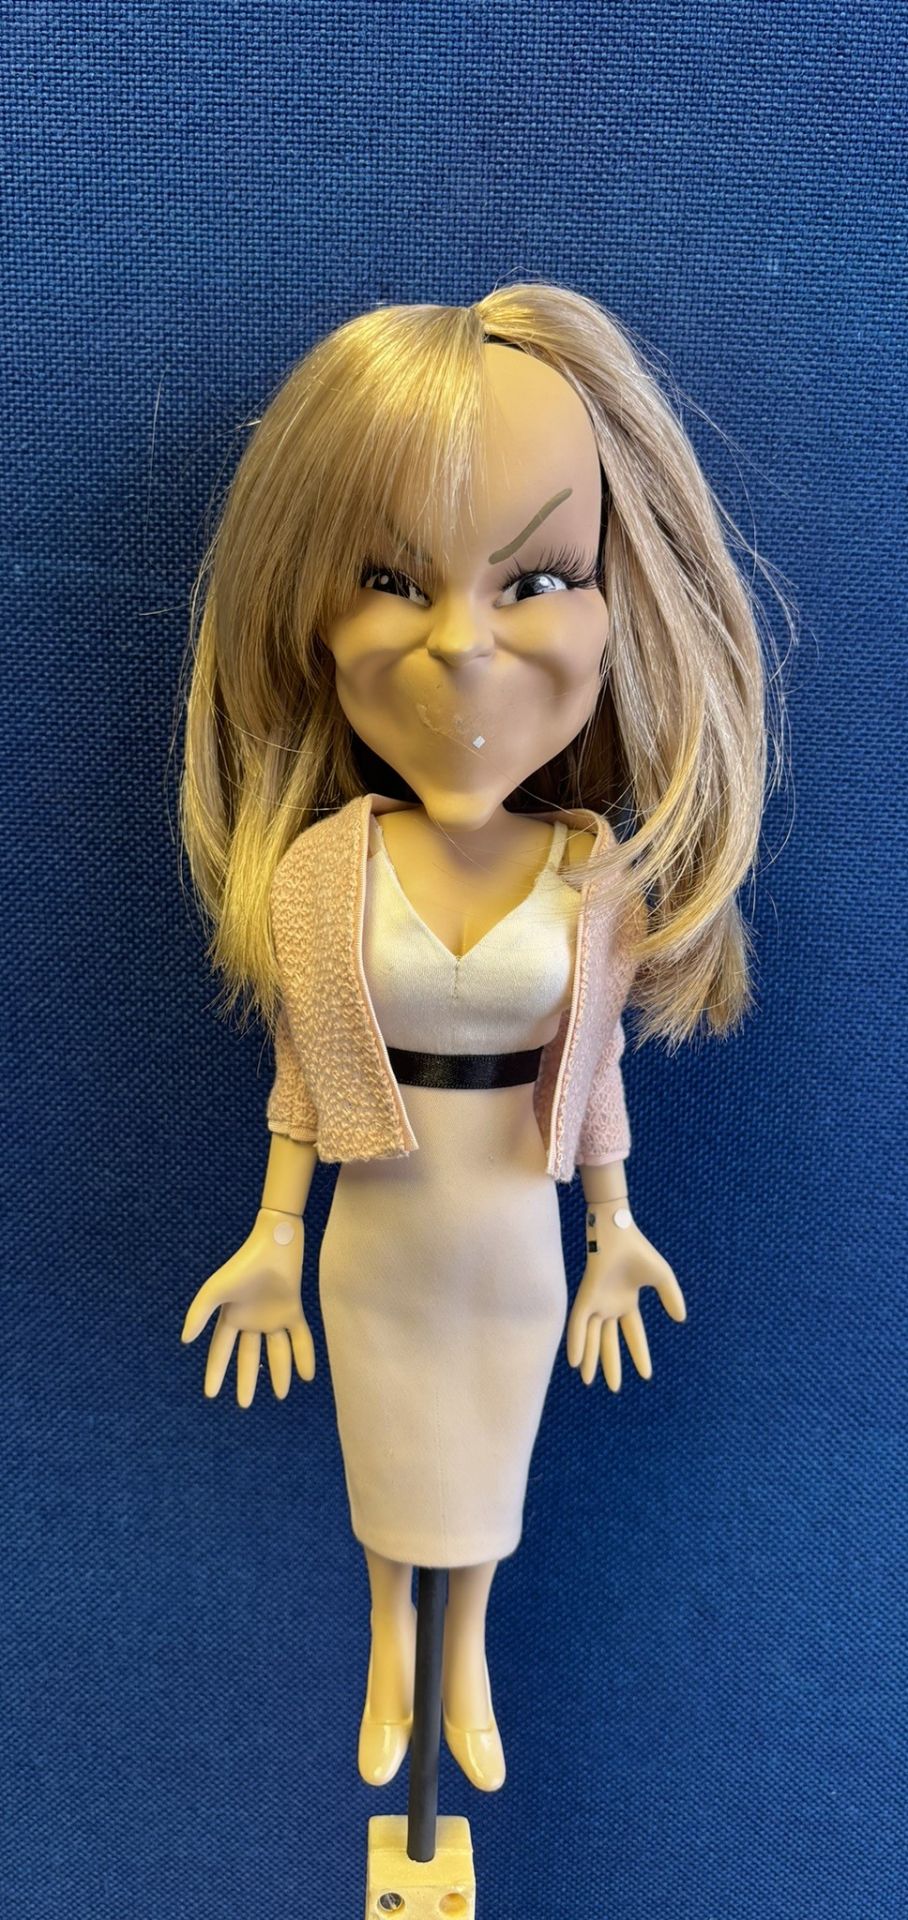 Newzoid puppet - Amanda Holden - Image 2 of 3